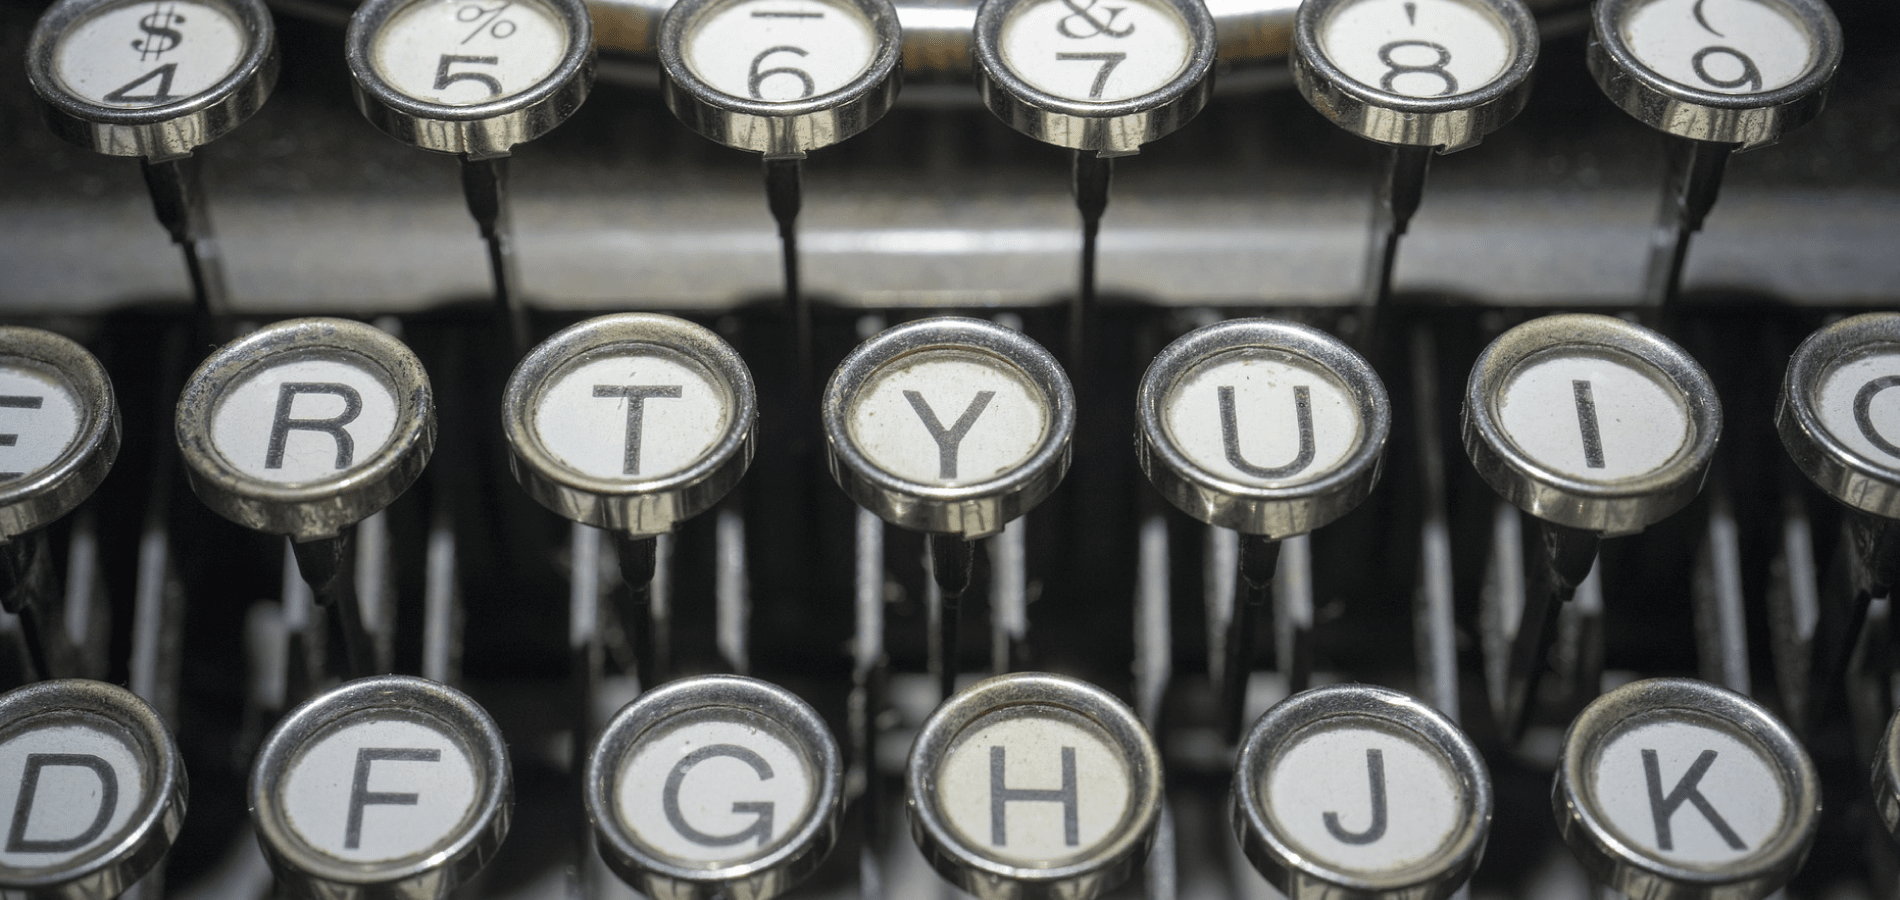 image of a typewriter